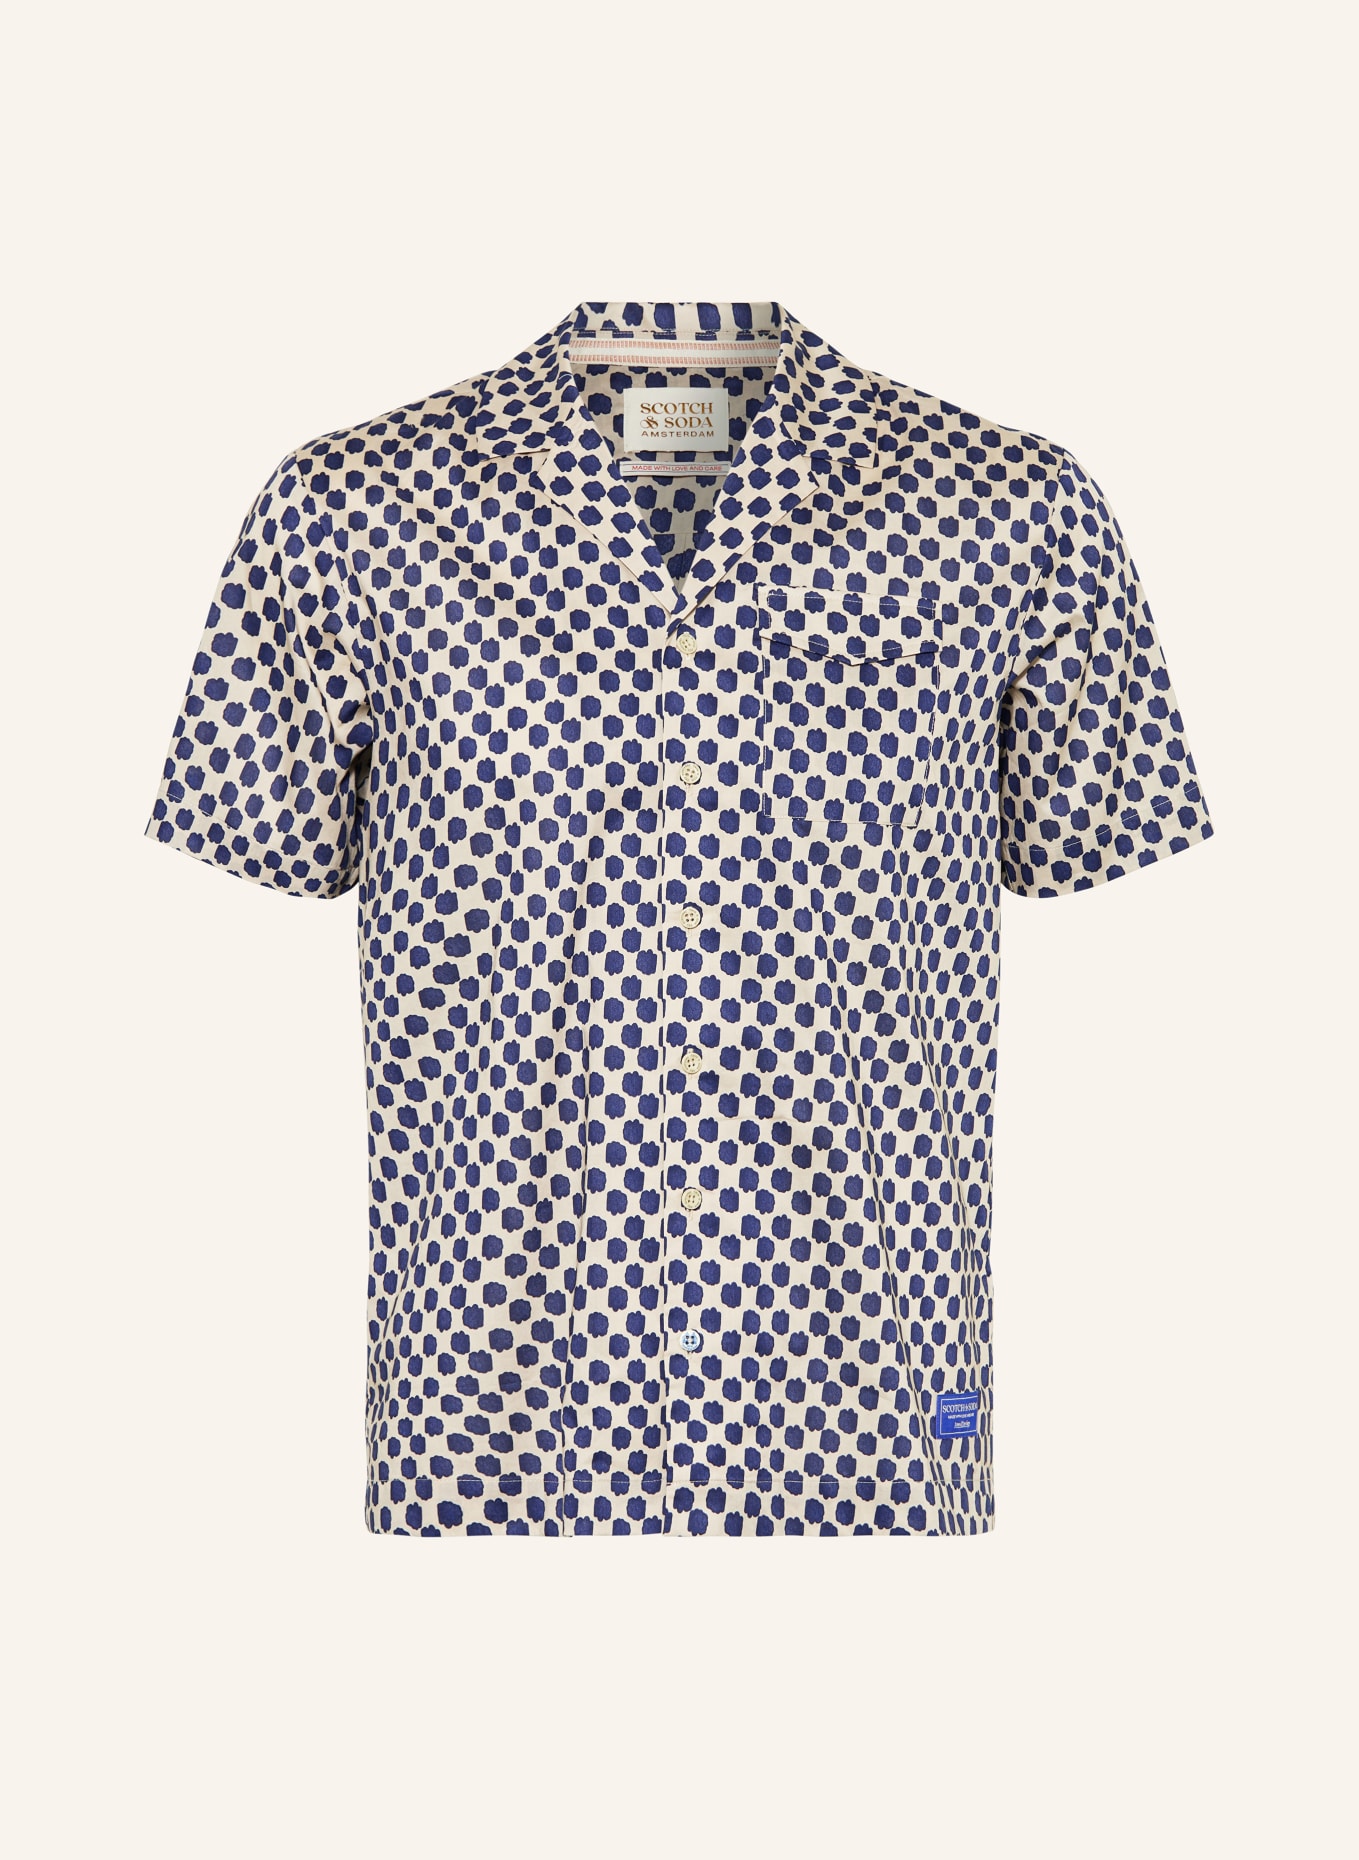 SCOTCH & SODA Resort shirt regular fit, Color: BEIGE/ DARK BLUE (Image 1)